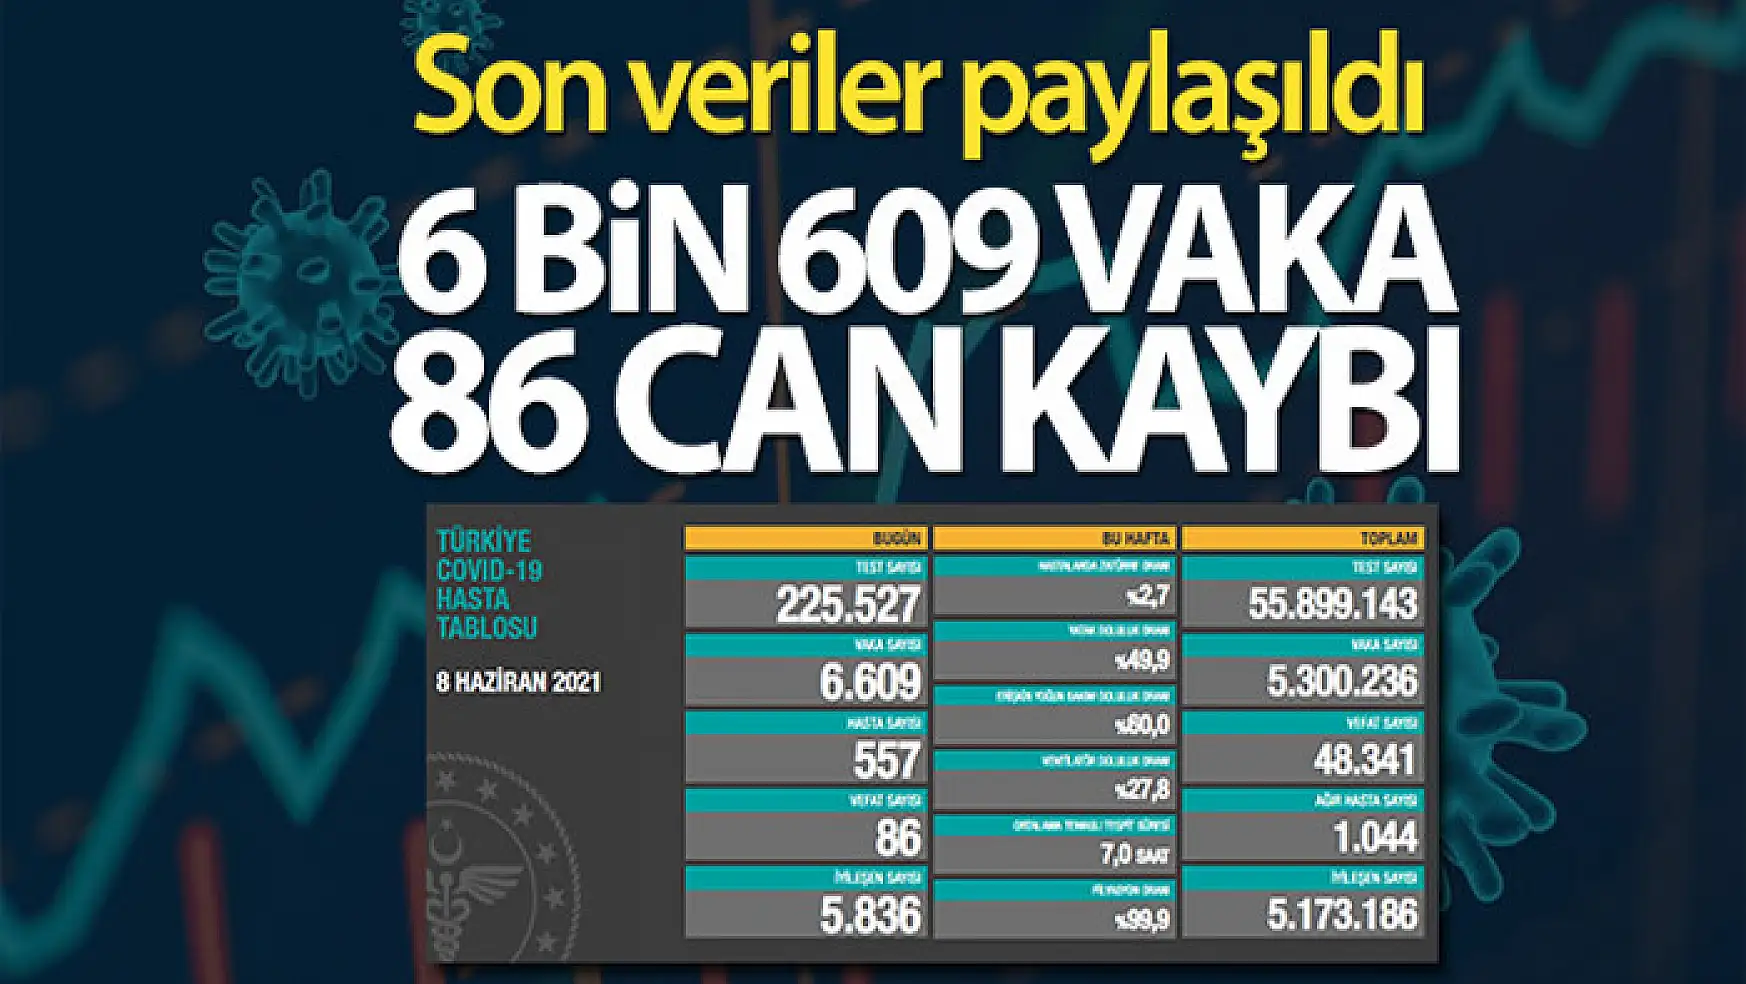 Türkiye'de son 24 saatte 6.609 koronavirüs vakası tespit edildi